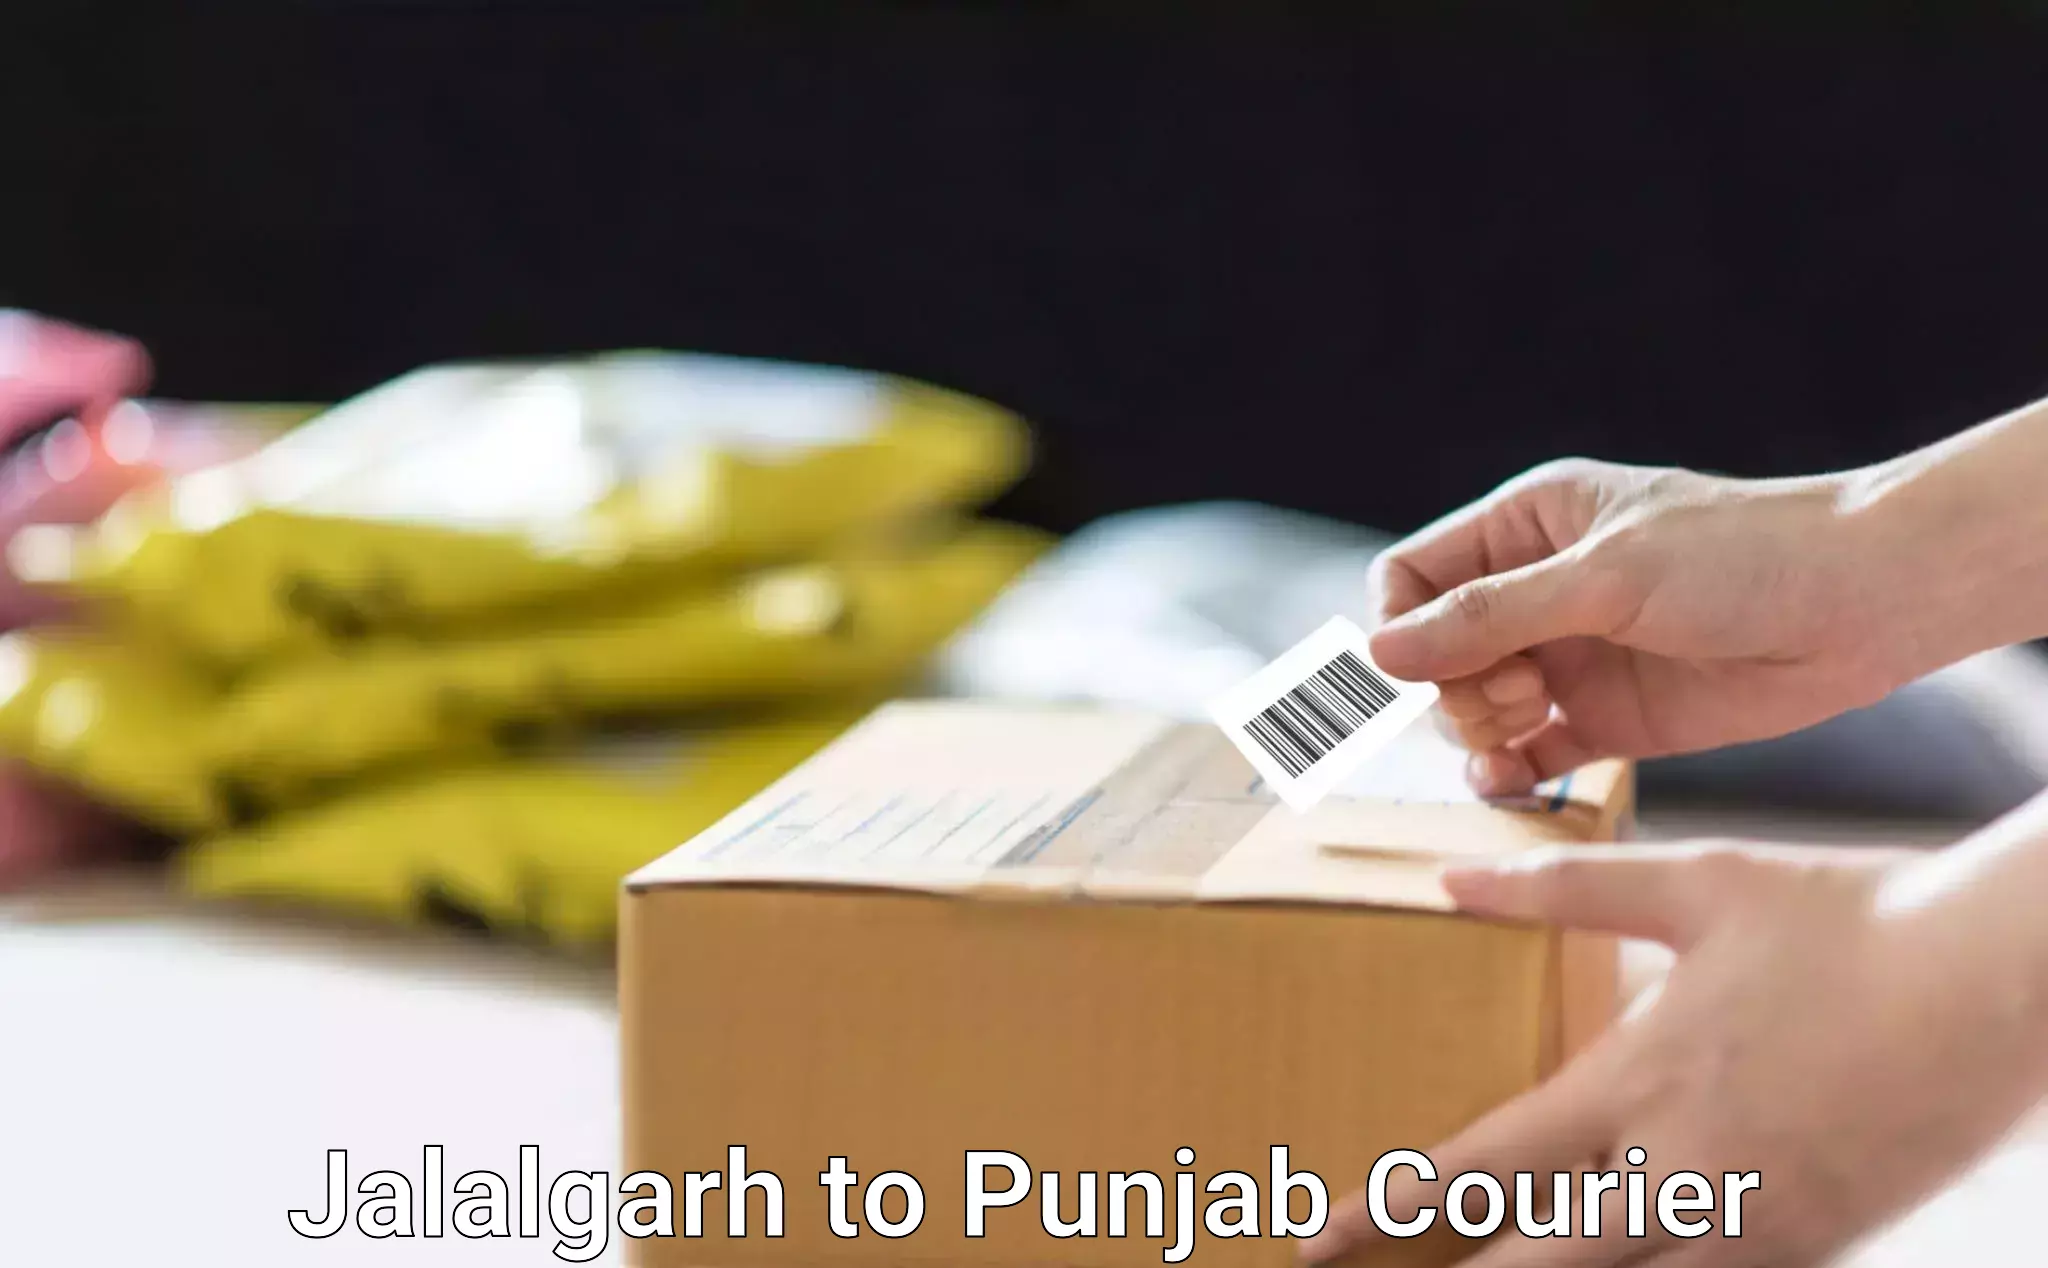 Furniture moving plans Jalalgarh to Punjab